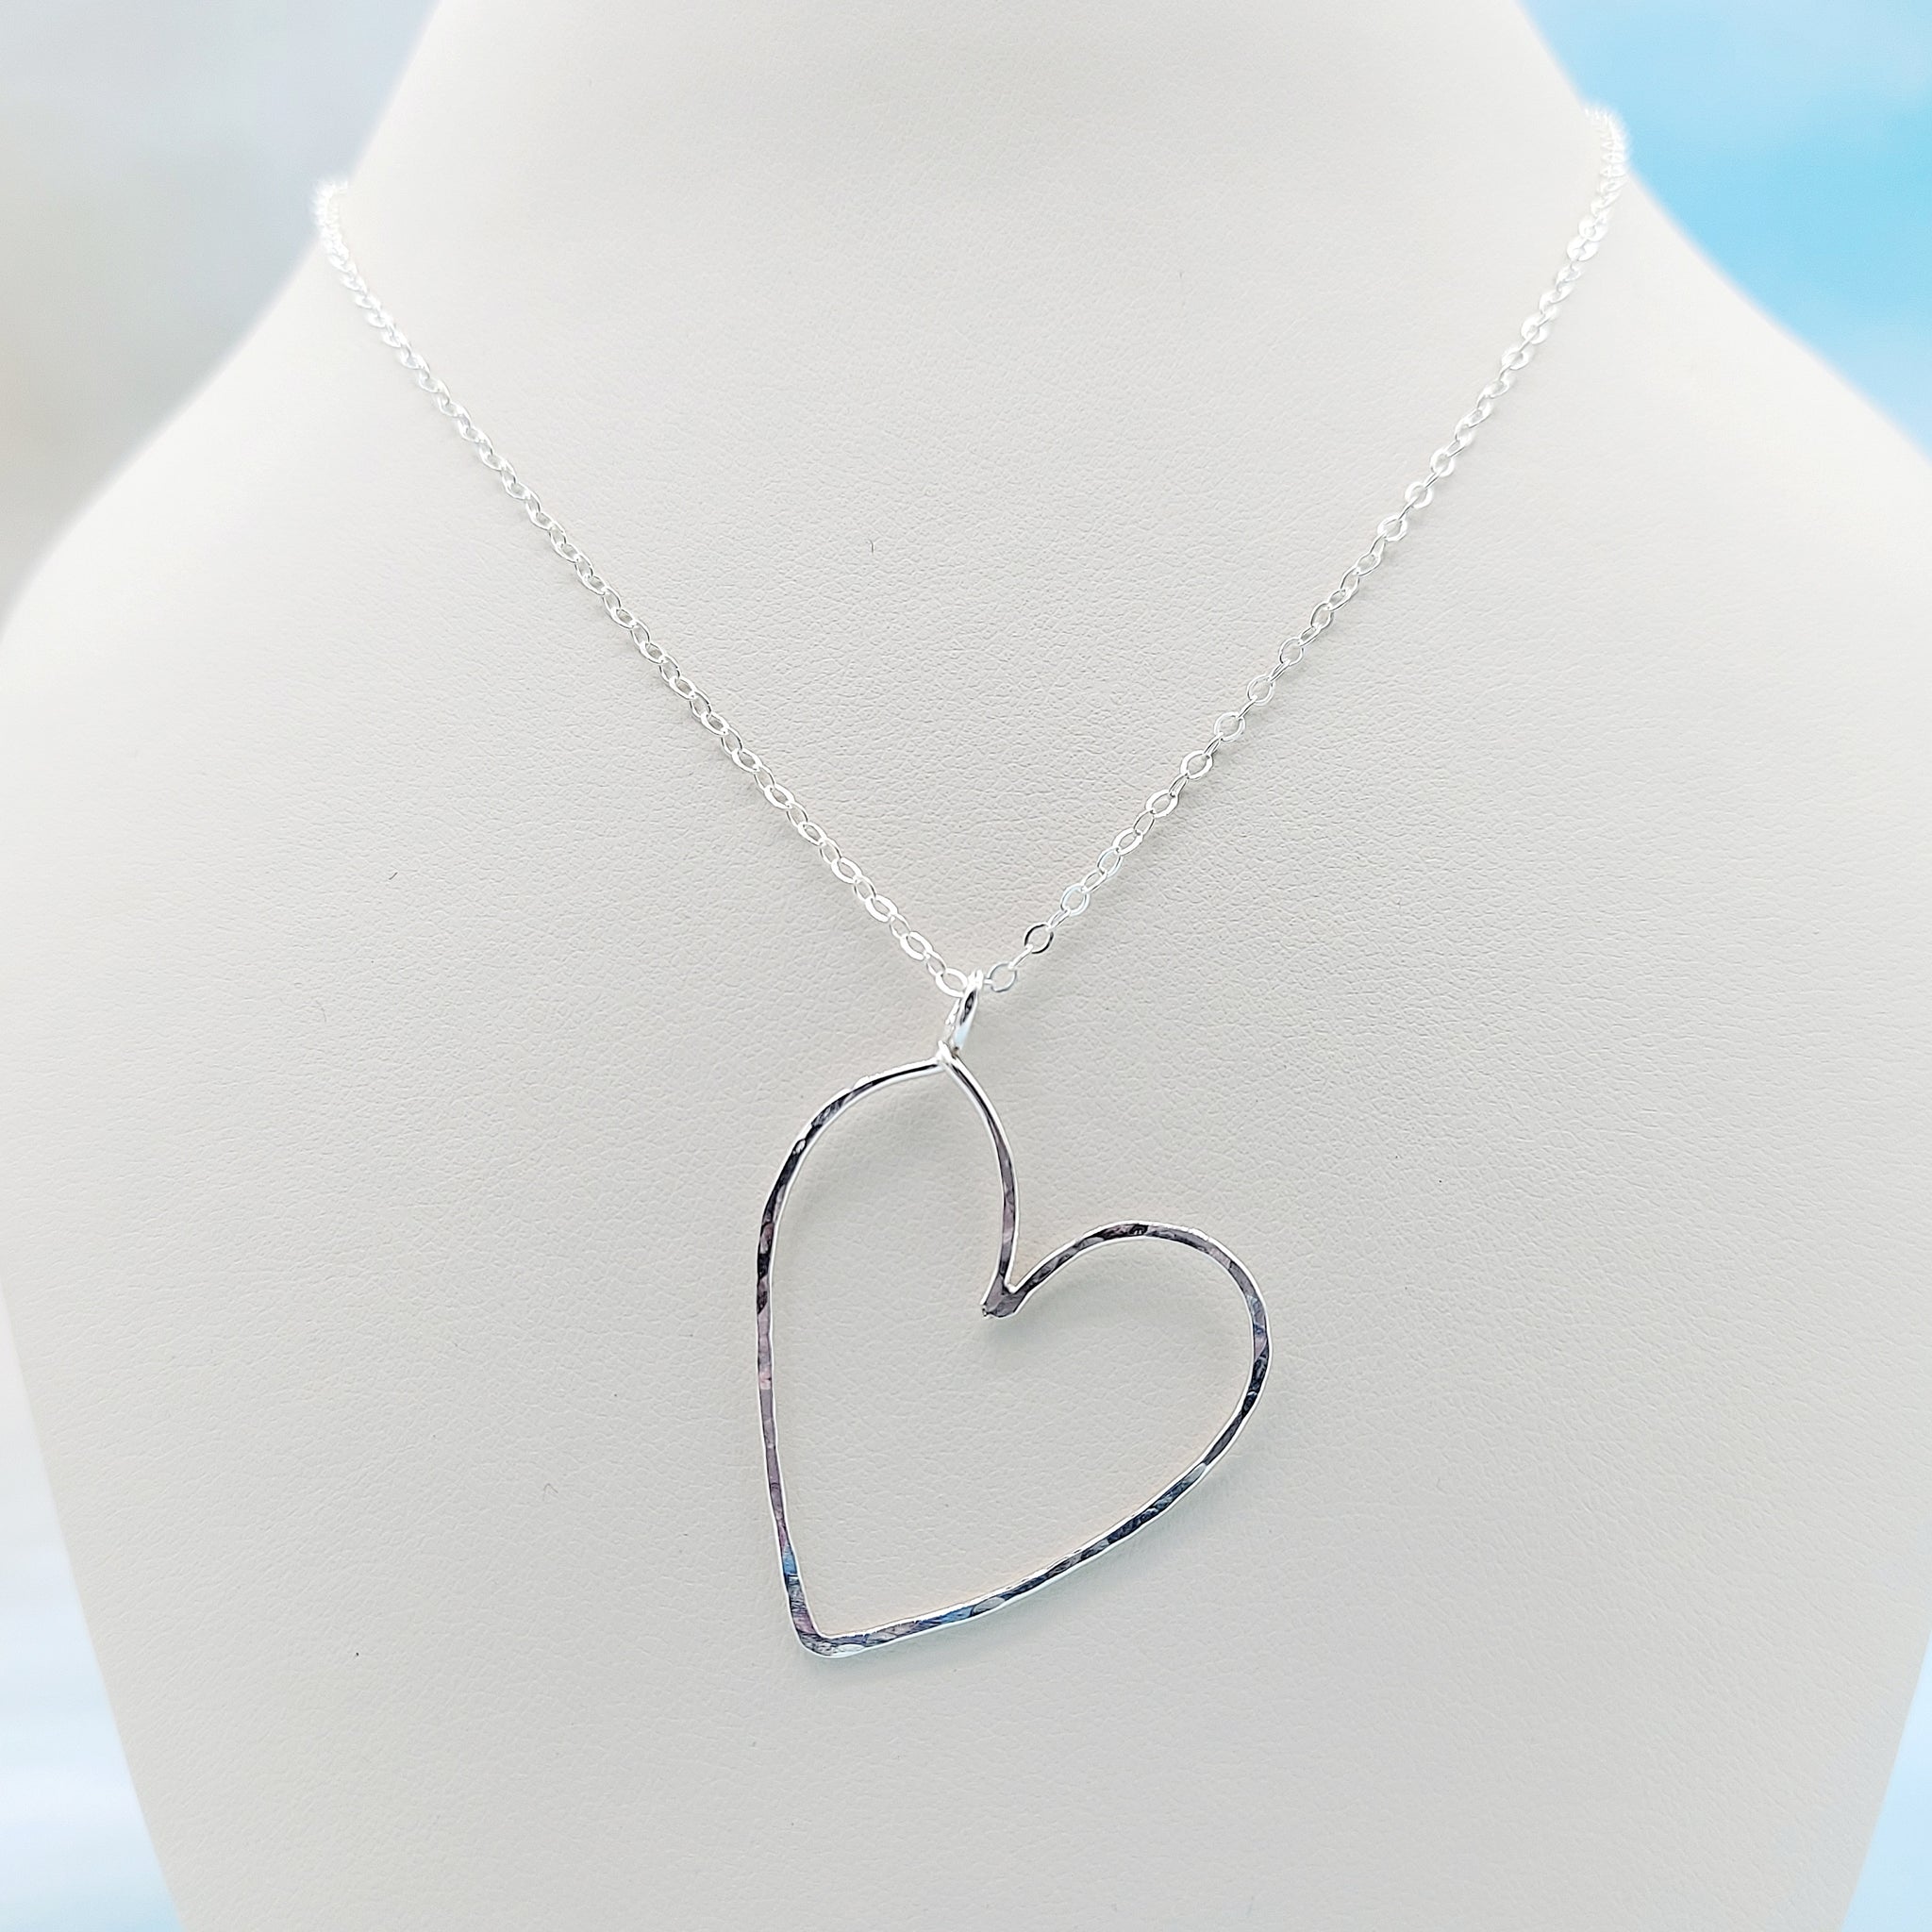 Sideways Heart Necklace with Thin Chain – Gazza Ladra Fine Jewelry